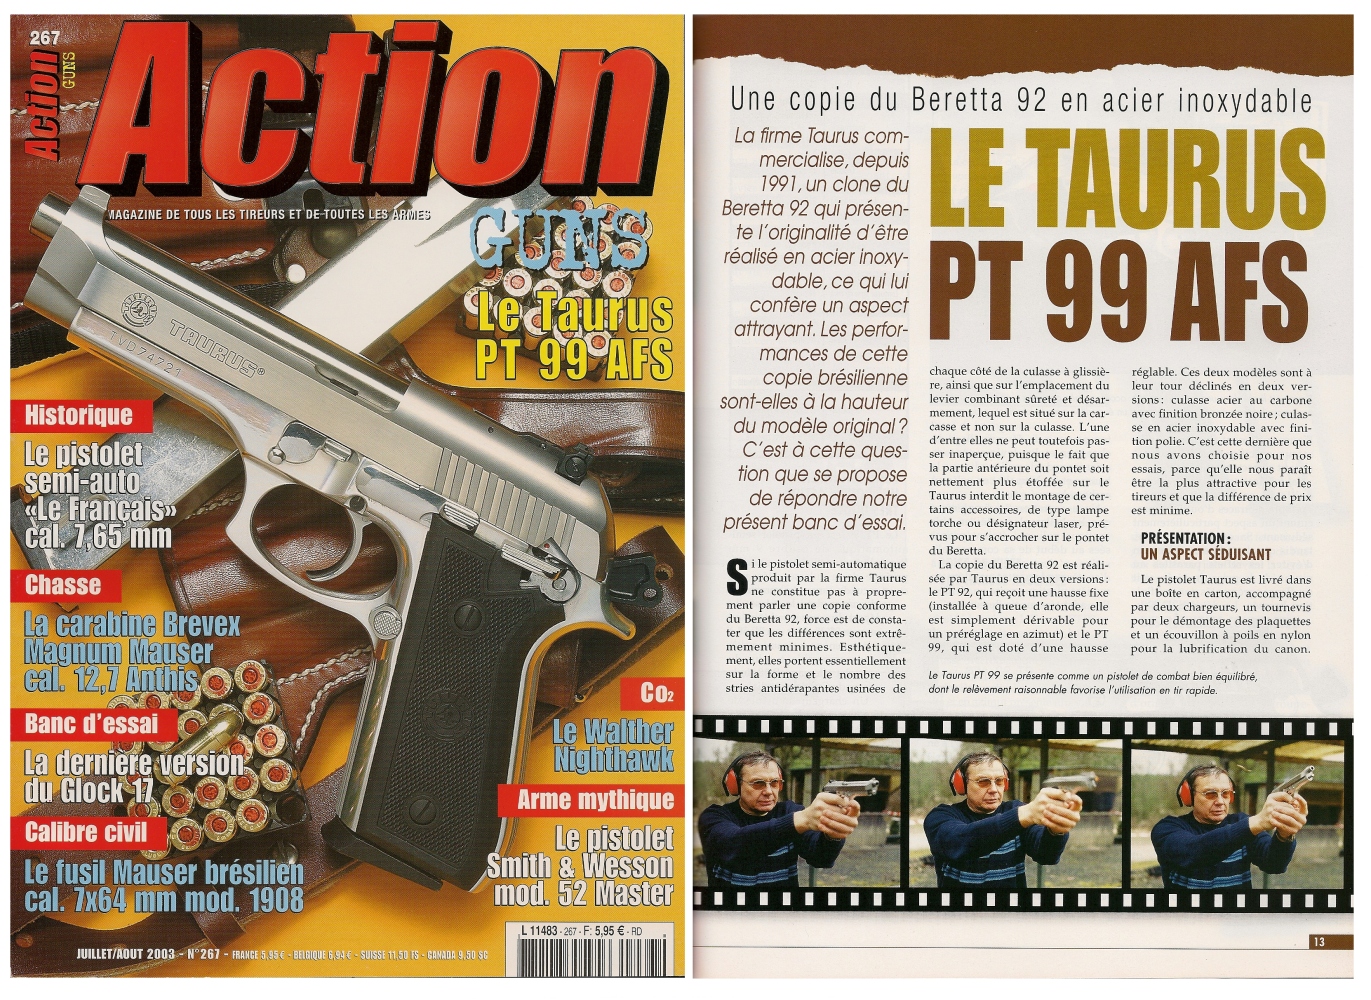 Le banc d'essai du pistolet Taurus PT 99 AFS a été publié sur 6 pages dans le magazine Action Guns n°267 (juillet/août 2003). 